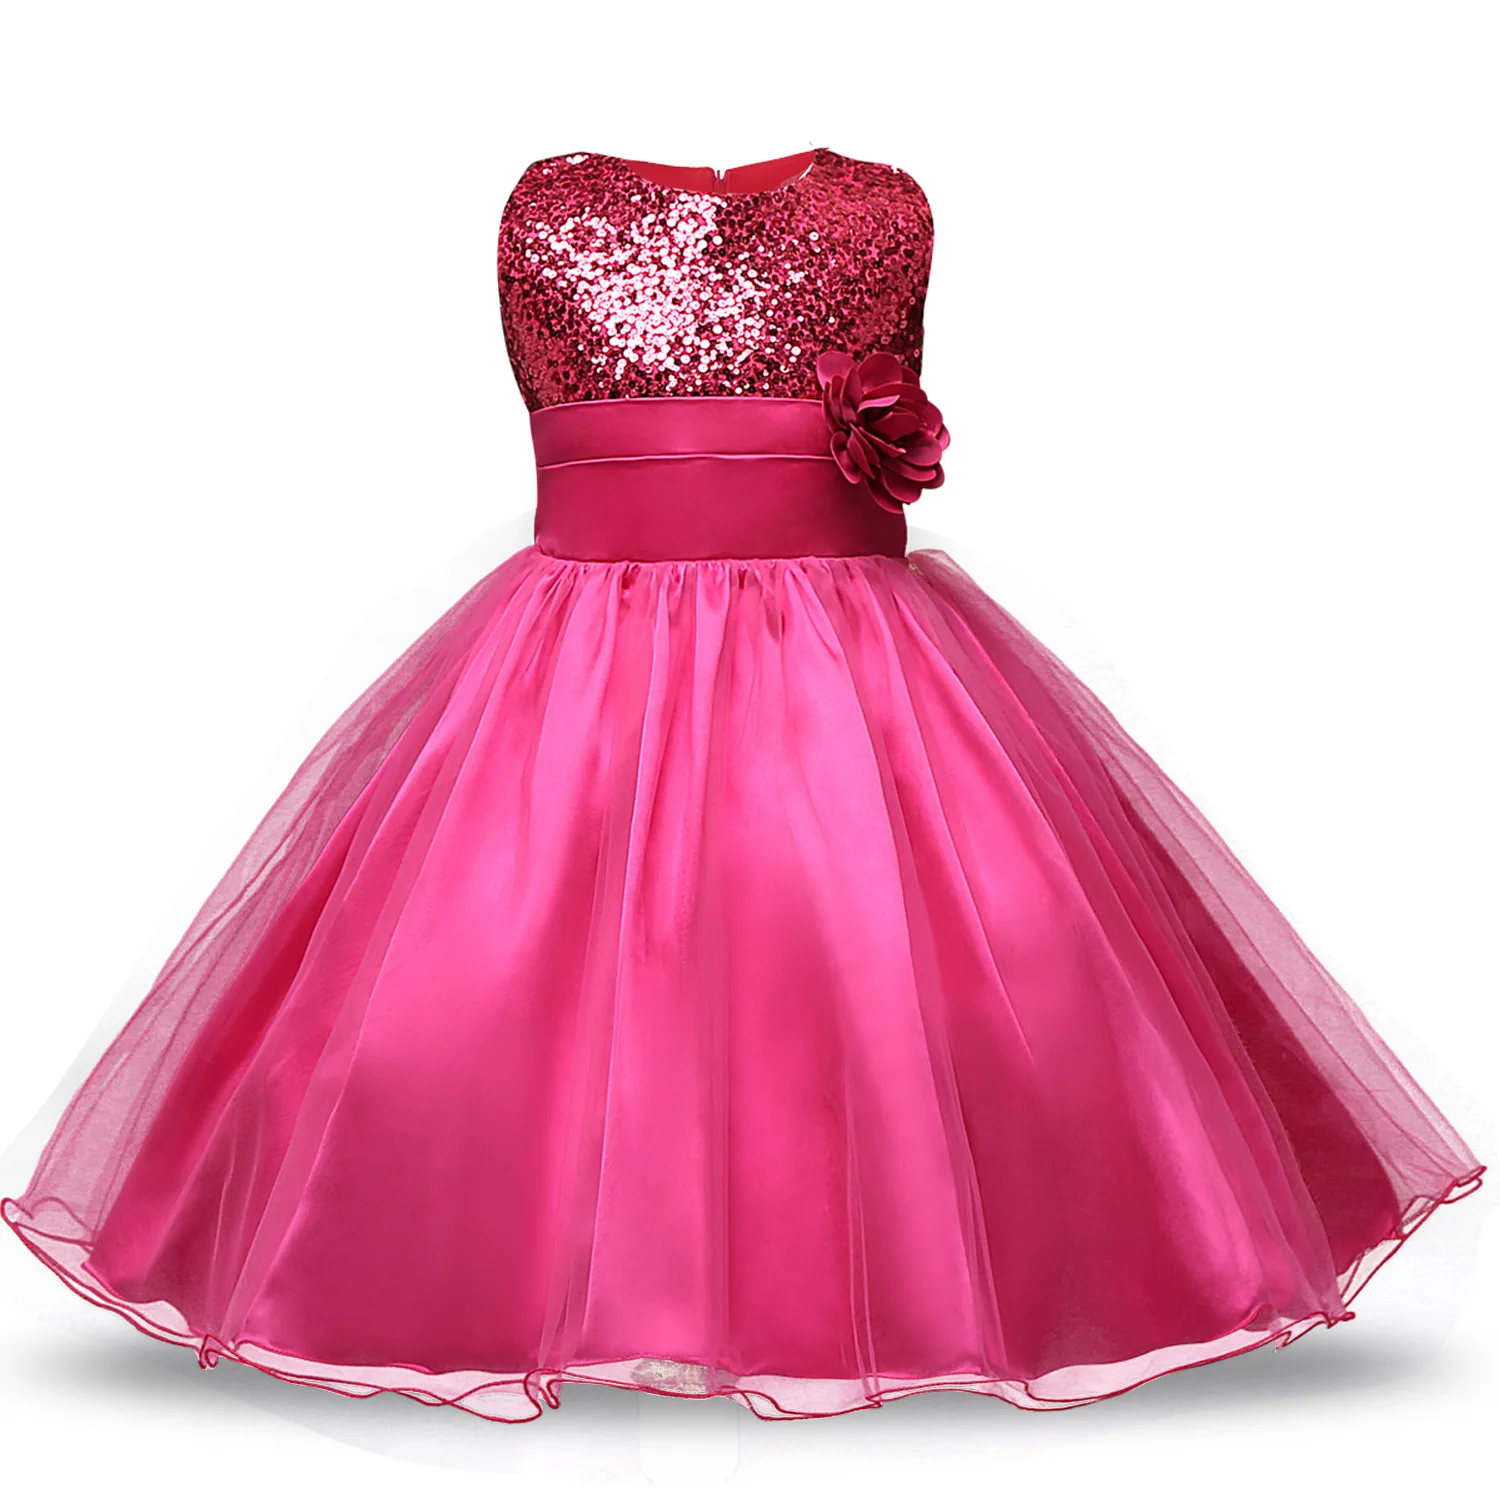 Детские платья для девочек, вышитая юбка с цветами одежда для детей элегантное платье с бантом для девочек, вечерние платья принцессы